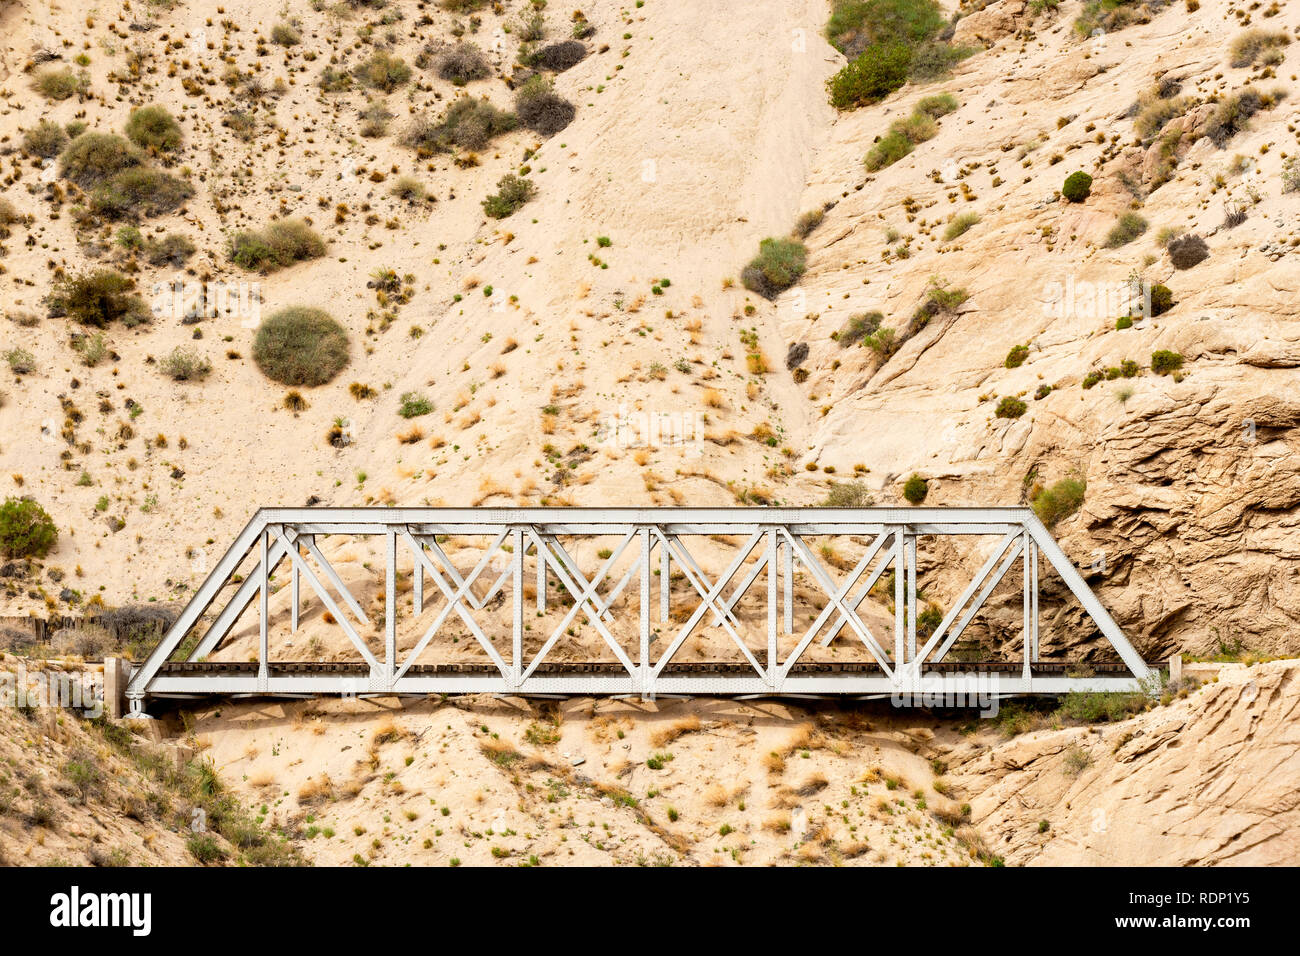 Un pont sur la voie ferrée désaffectée Transandine est englouti par le sable et gravier en voie d'érosion de la colline. Cette section est en Argentine. Banque D'Images